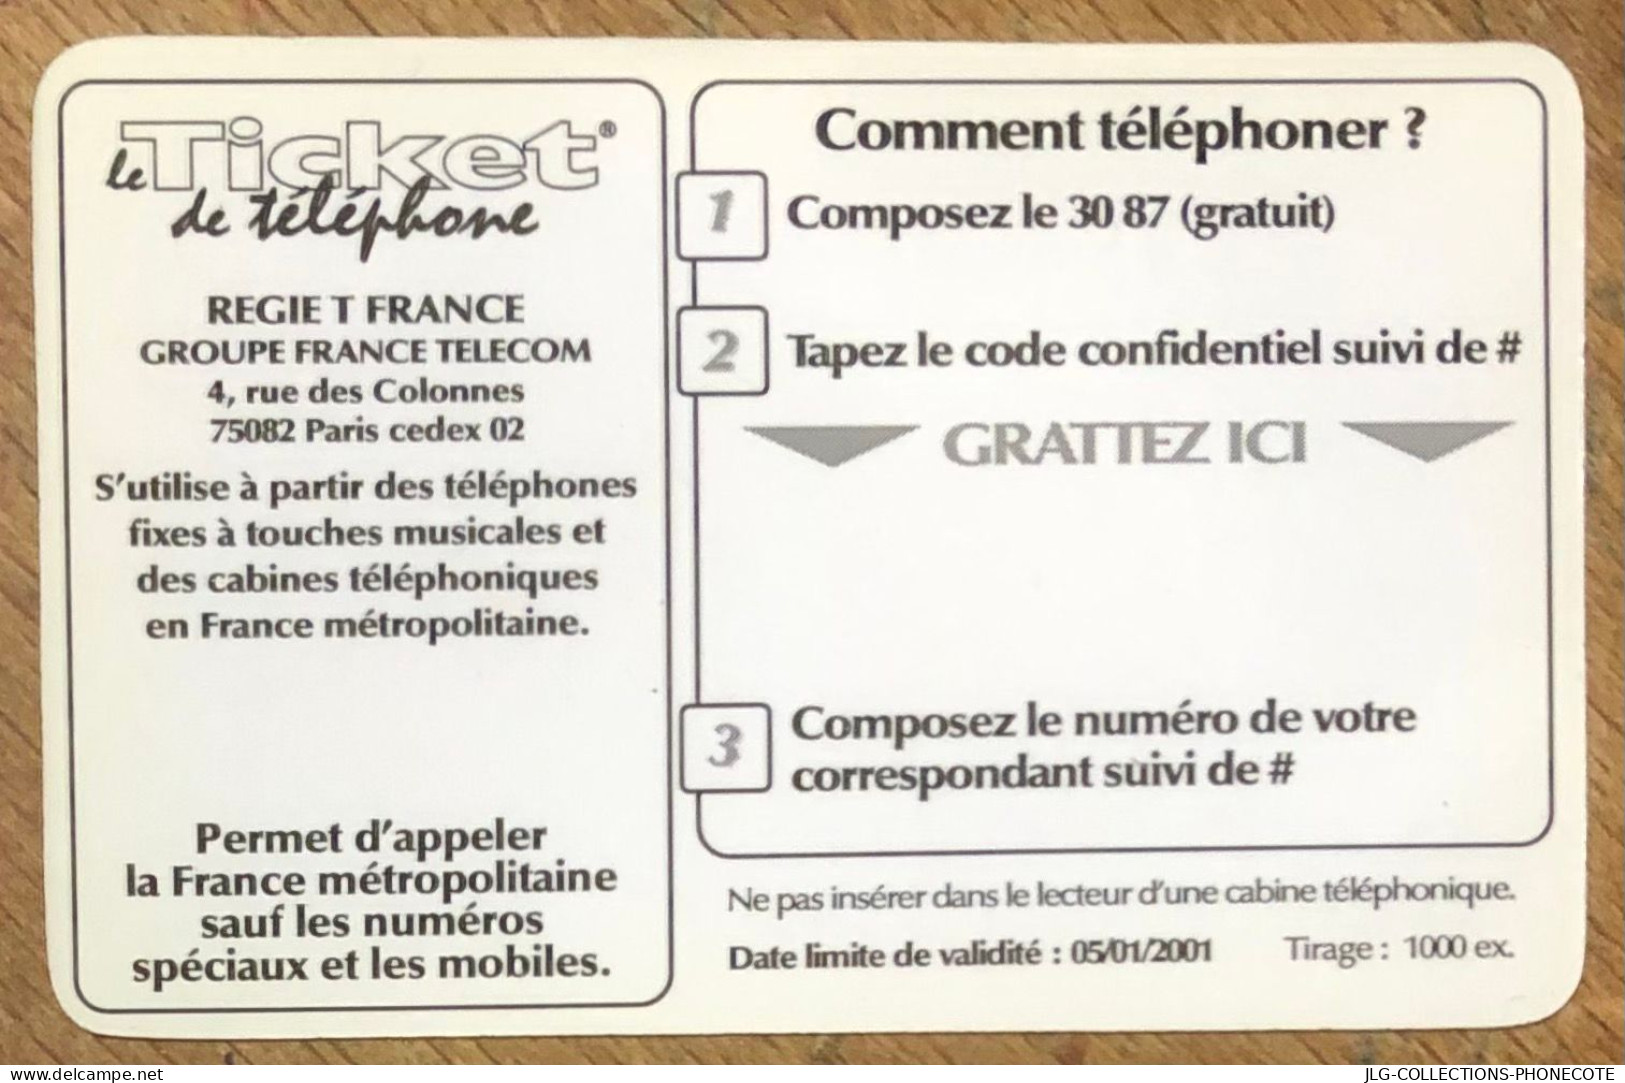 TICKET TÉLÉPHONE TOULOUSE SPÉCIMEN PREPAID PREPAYÉE CALLING CARD NO TELECARTE PHONECOTE SCHEDA PHONE CARD - FT